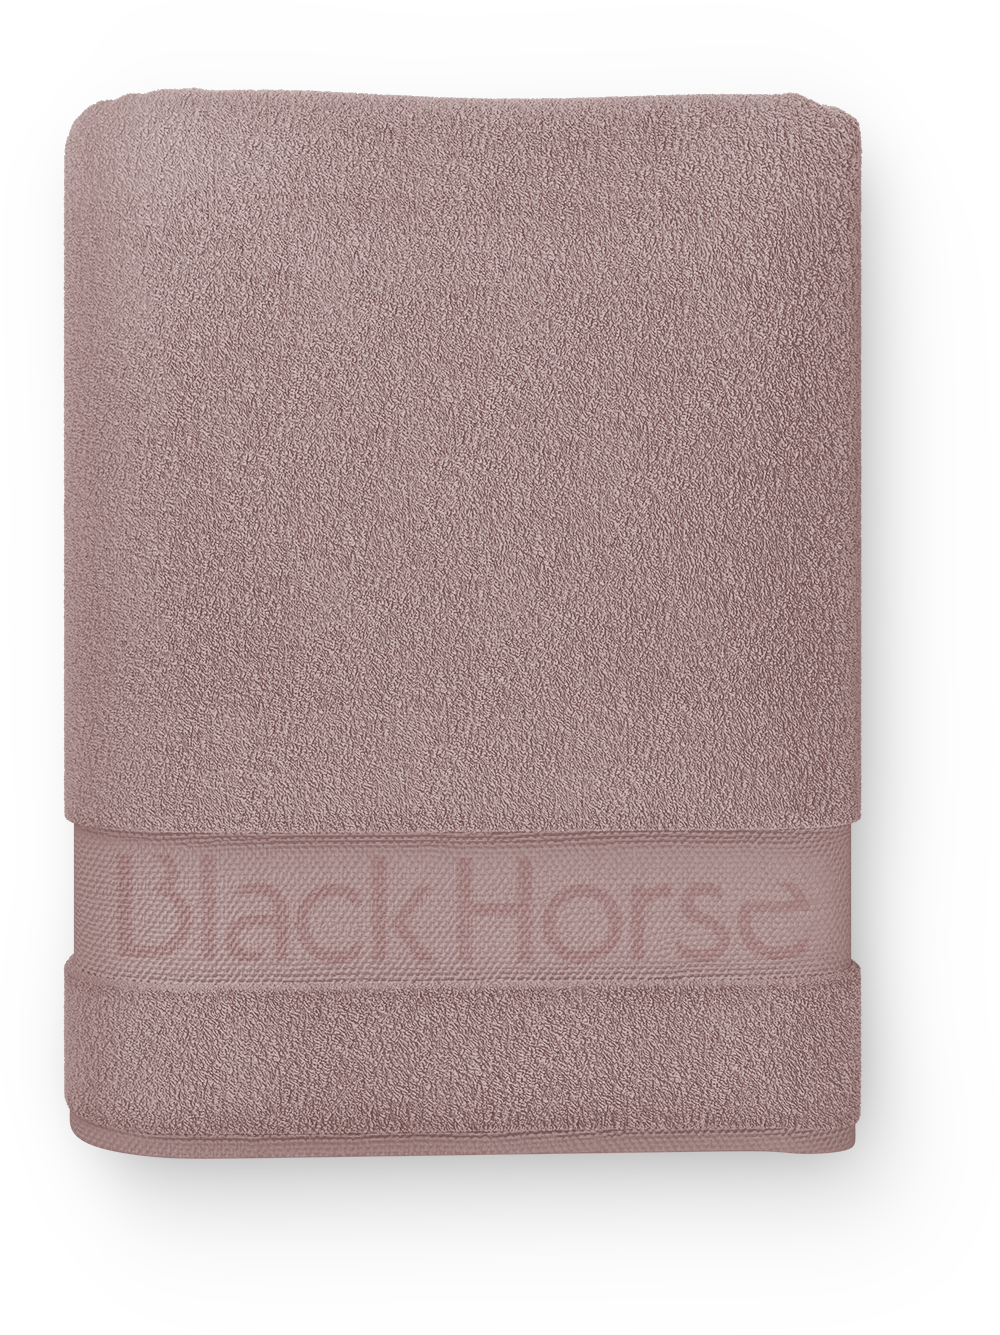 blackhorse_towel01